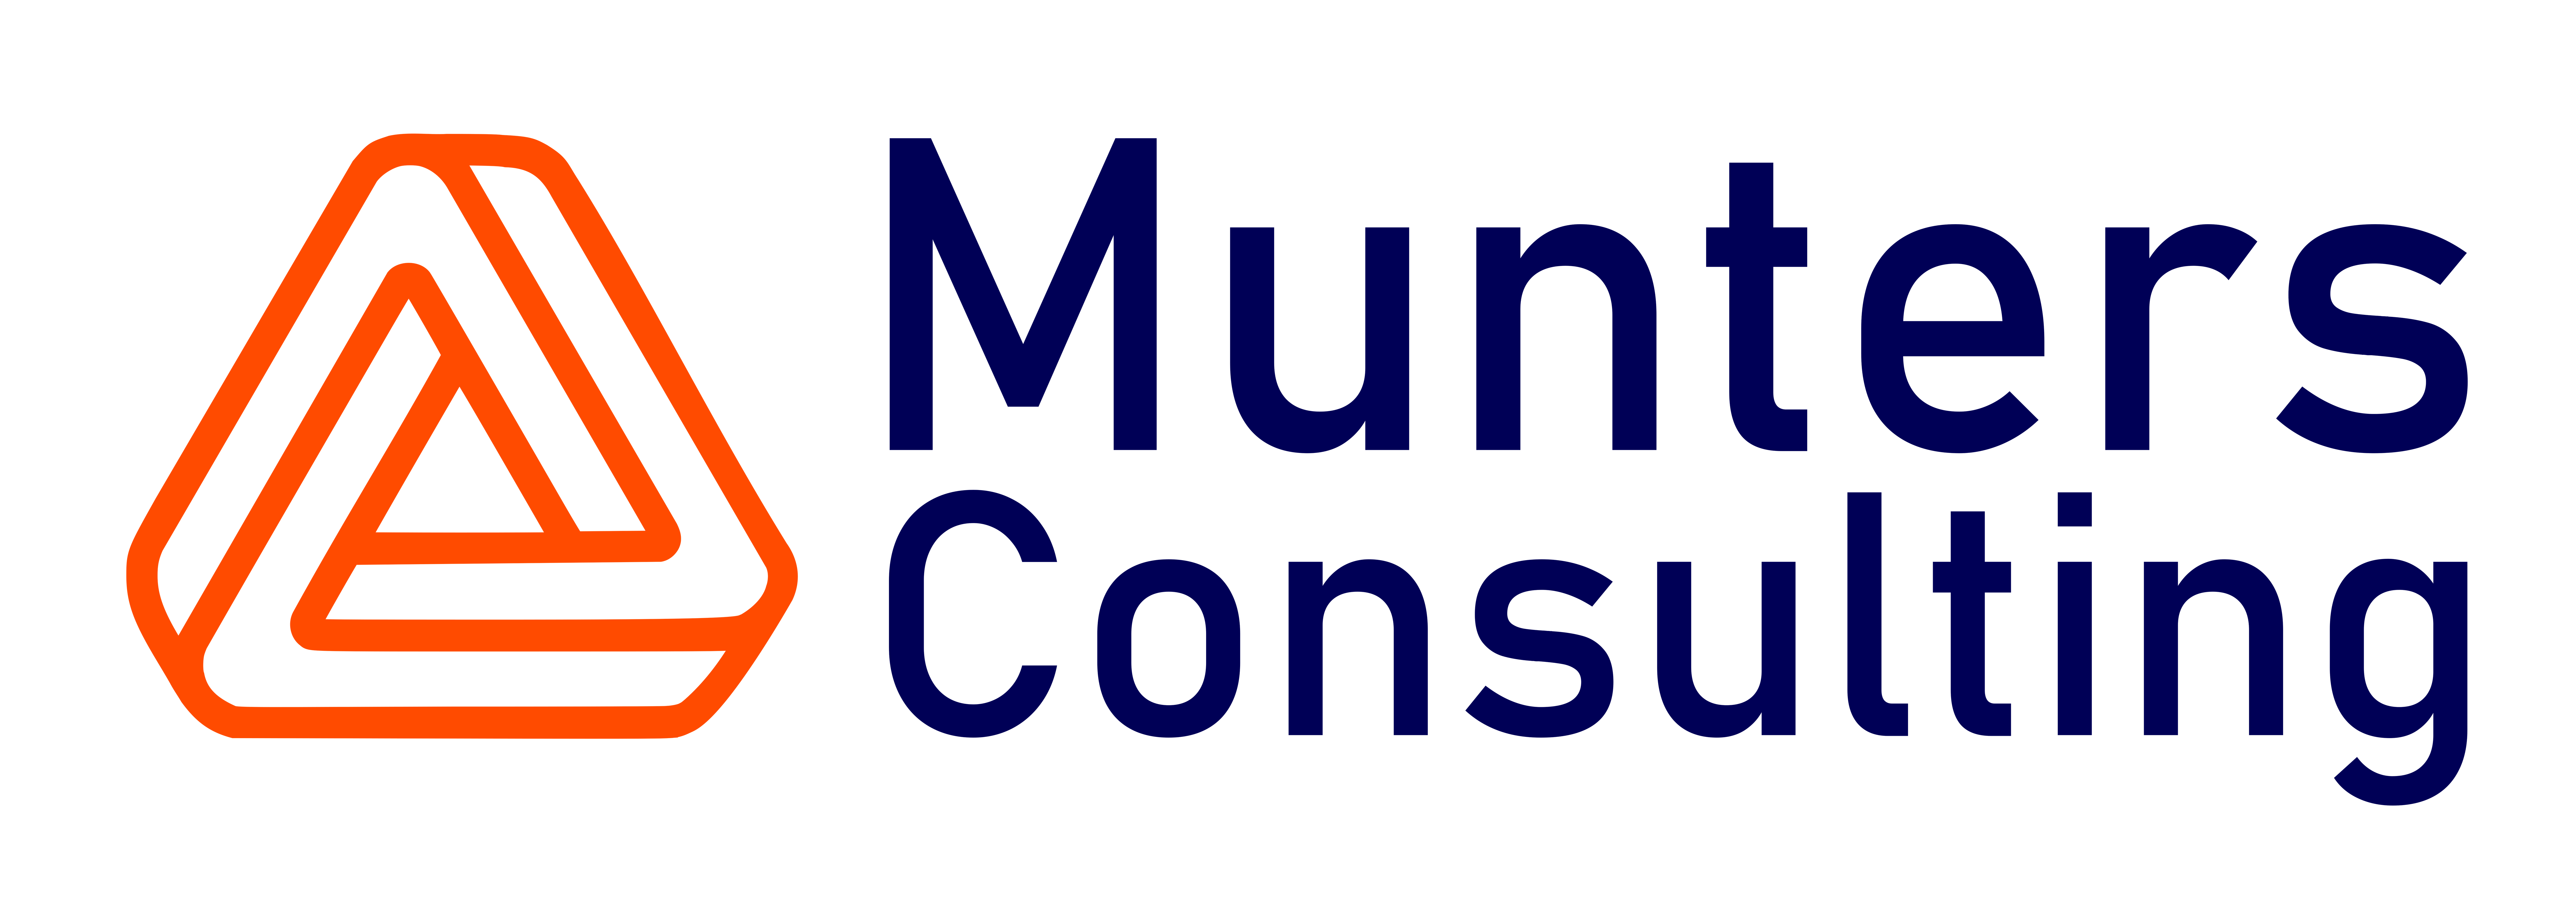 Munters Consulting